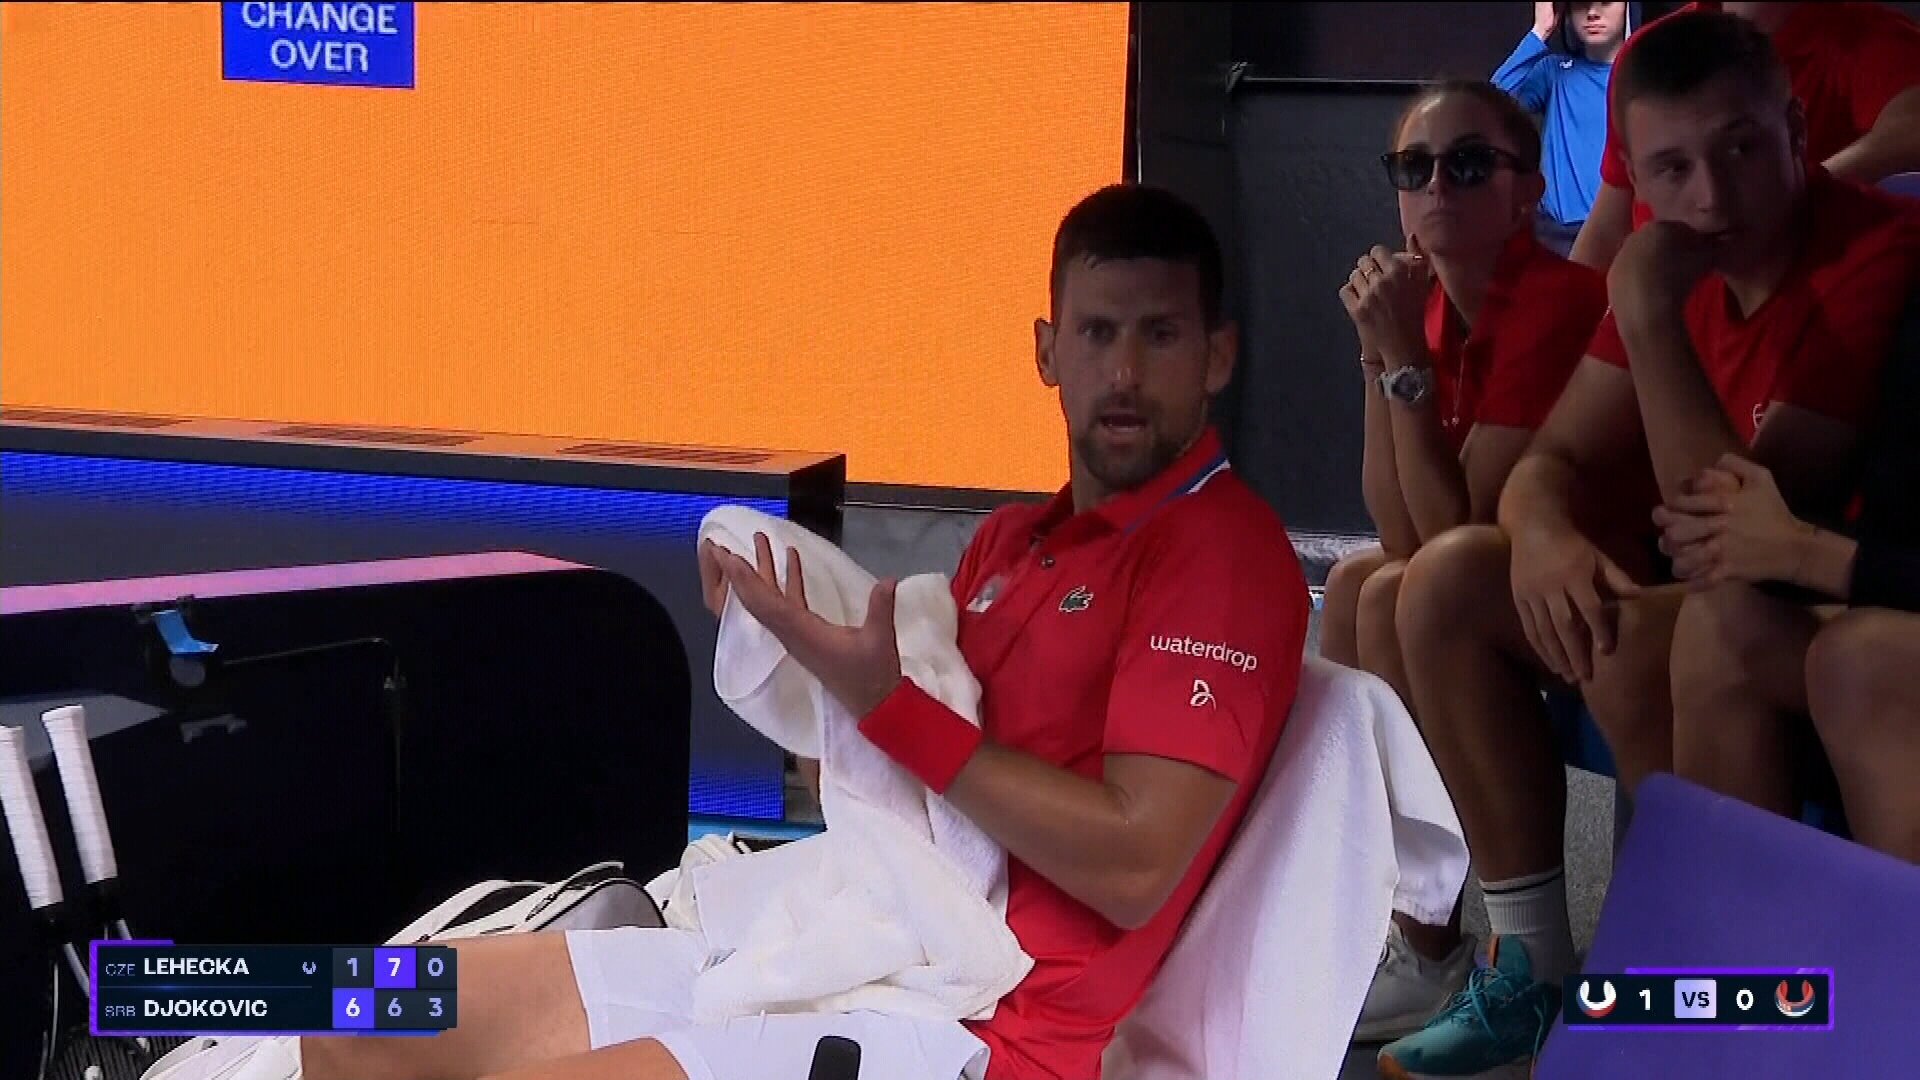 Novak Djokovic, criză de nervi: ”Ce este în regulă?”. Ivanisevic a replicat: ”Nu pot să spun nimic”